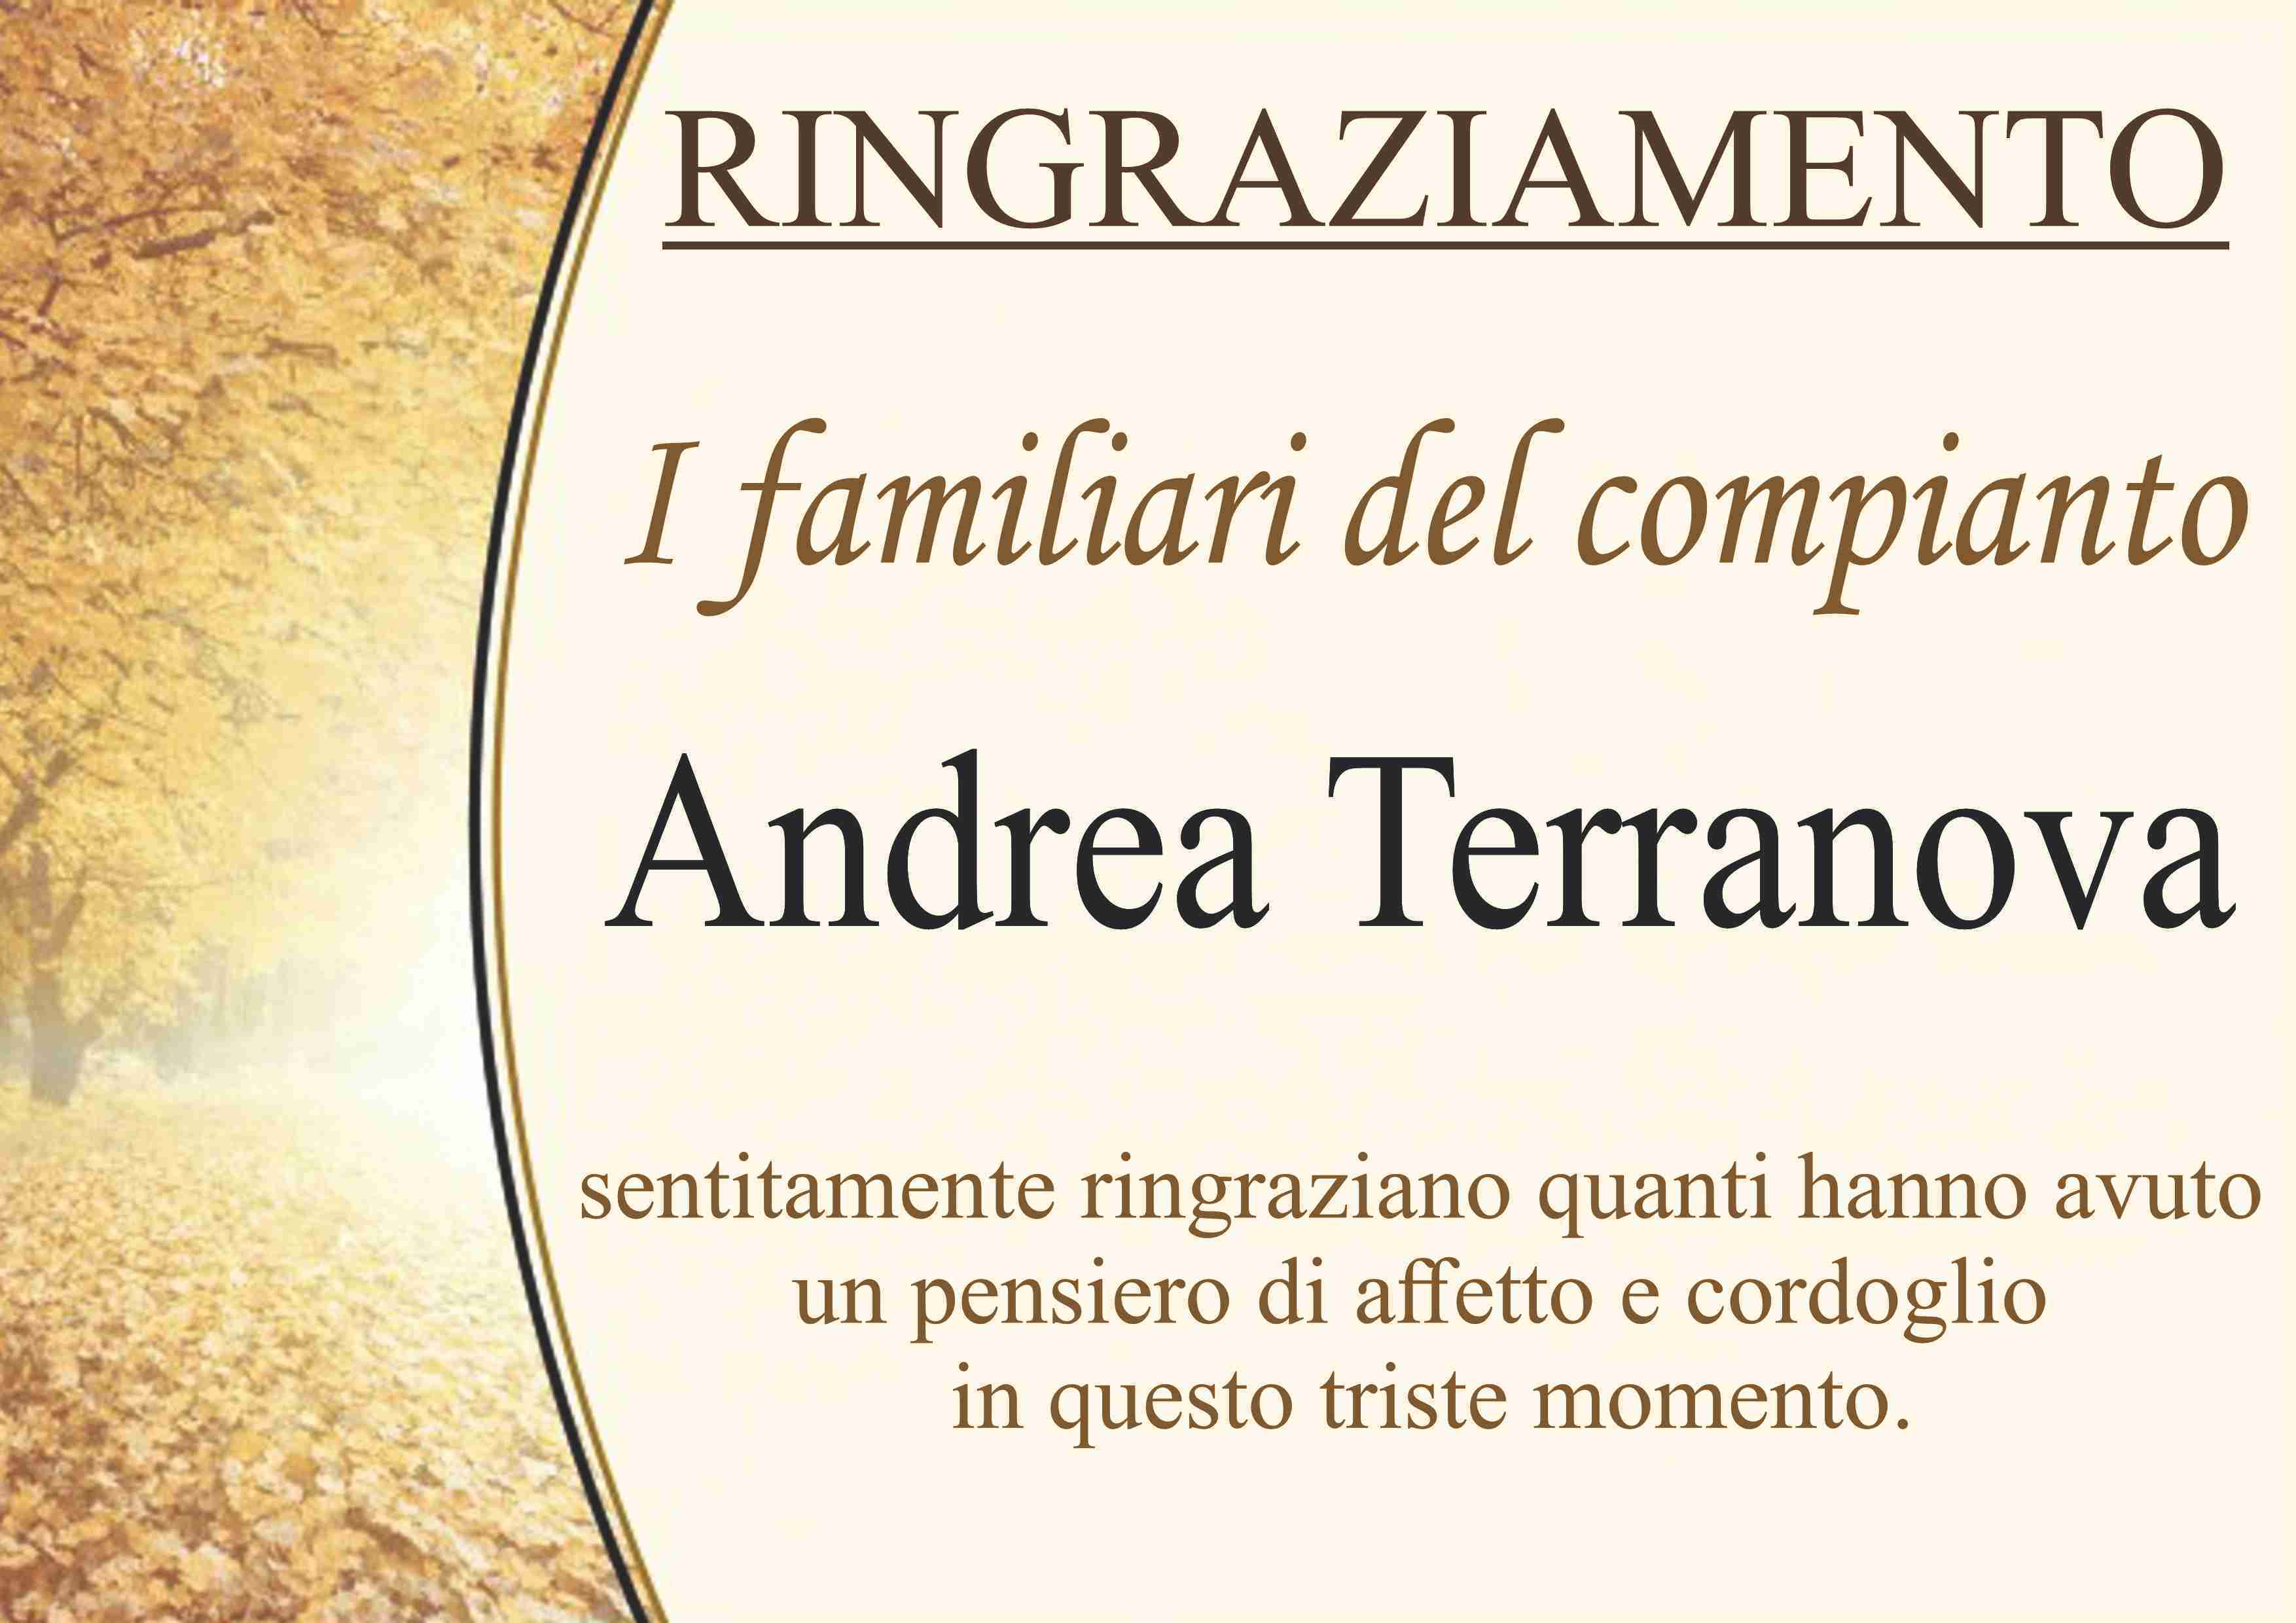 Andrea Terranova